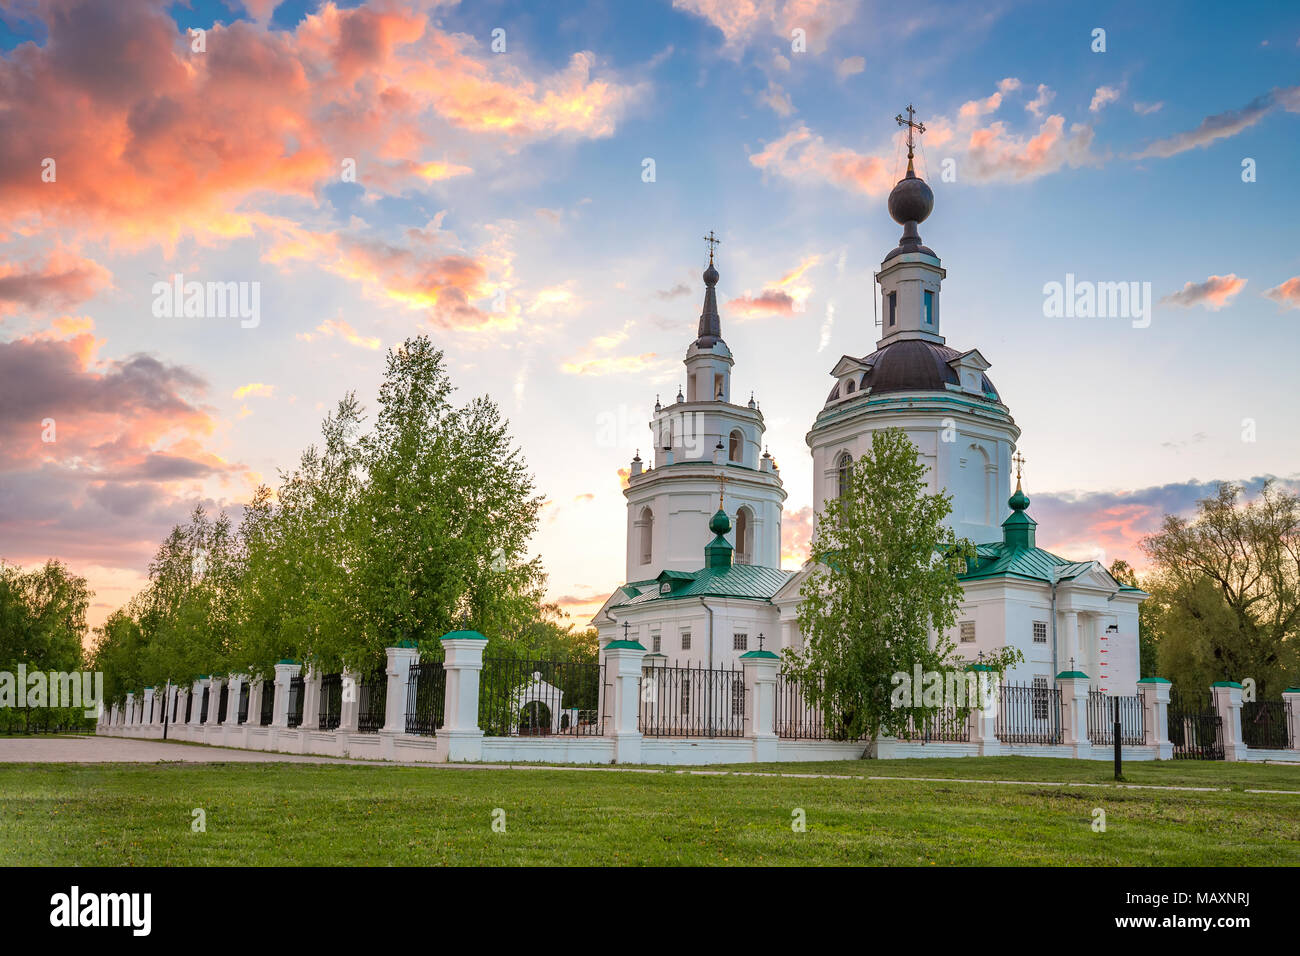 Nuages sur l'église orthodoxe russe au coucher du soleil. Bolshoe Boldino, Russie Banque D'Images